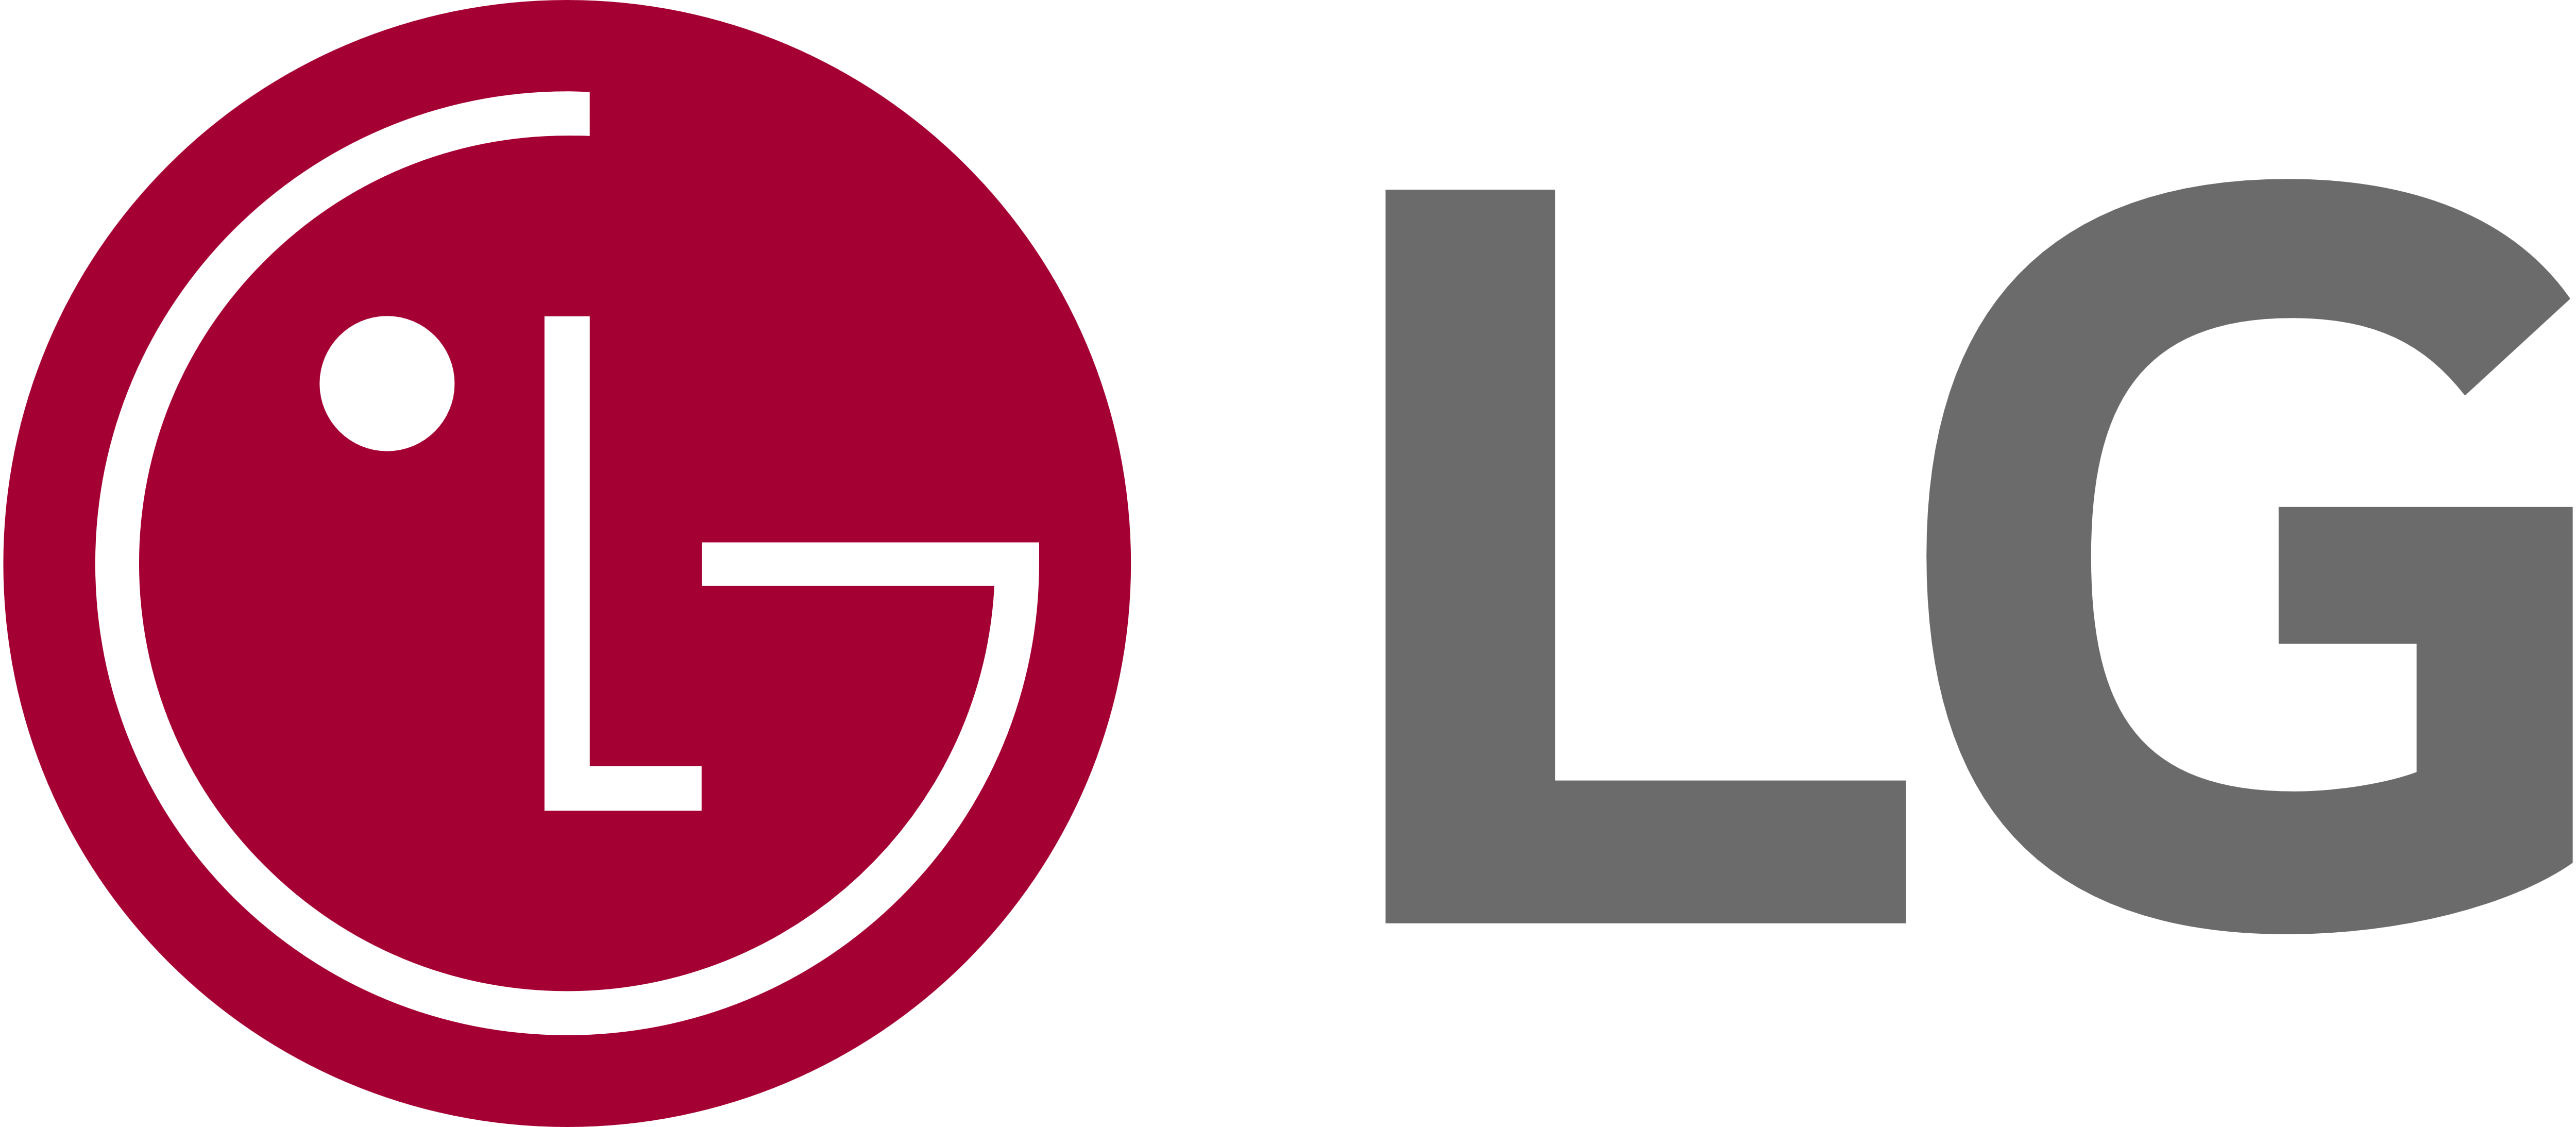 Фирменный магазин LG представляет широкий выбор бытовой техники, телевизоров,
саундбаров и другой электроники.